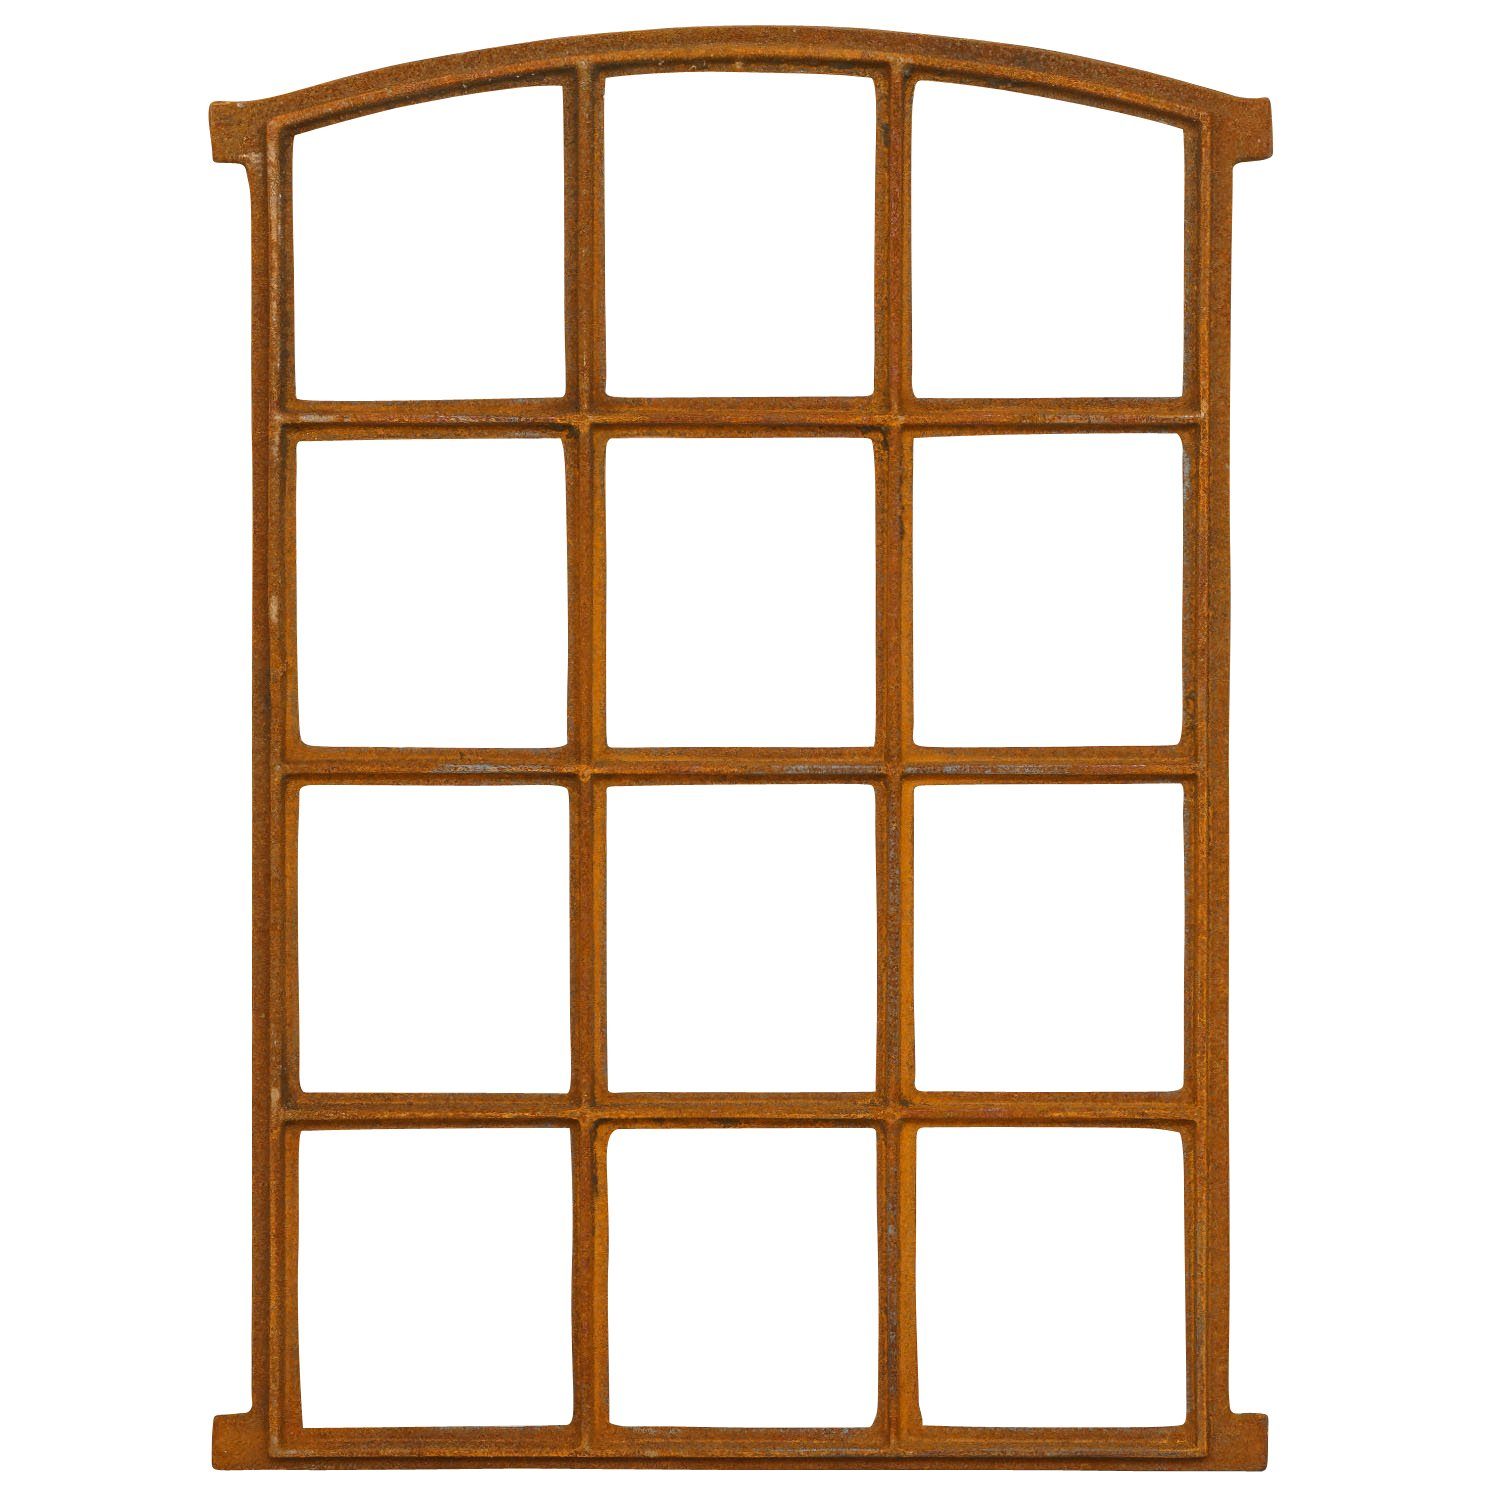 Rost Stallfenster Scheunenfenster 78cm Felder Fenster 12 Fenster Aubaho Antik-S Eisen